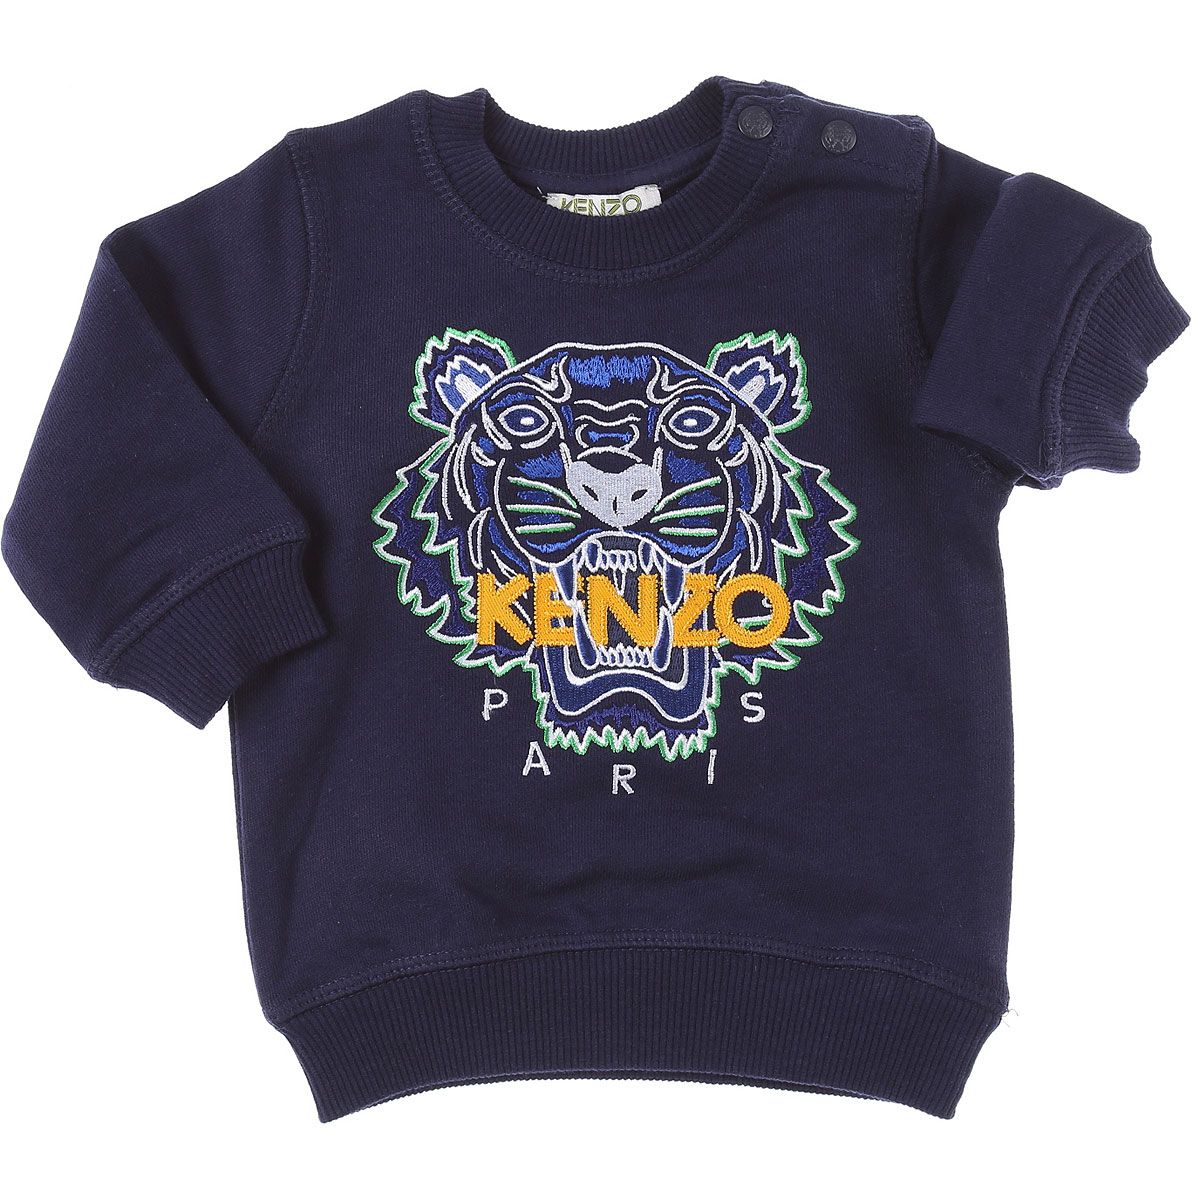 Kenzo Baby Sweatshirt & Kapuzenpullover für Jungen Günstig im Sale, Marine blau, Baumwolle, 2017, 18M 6M 9M